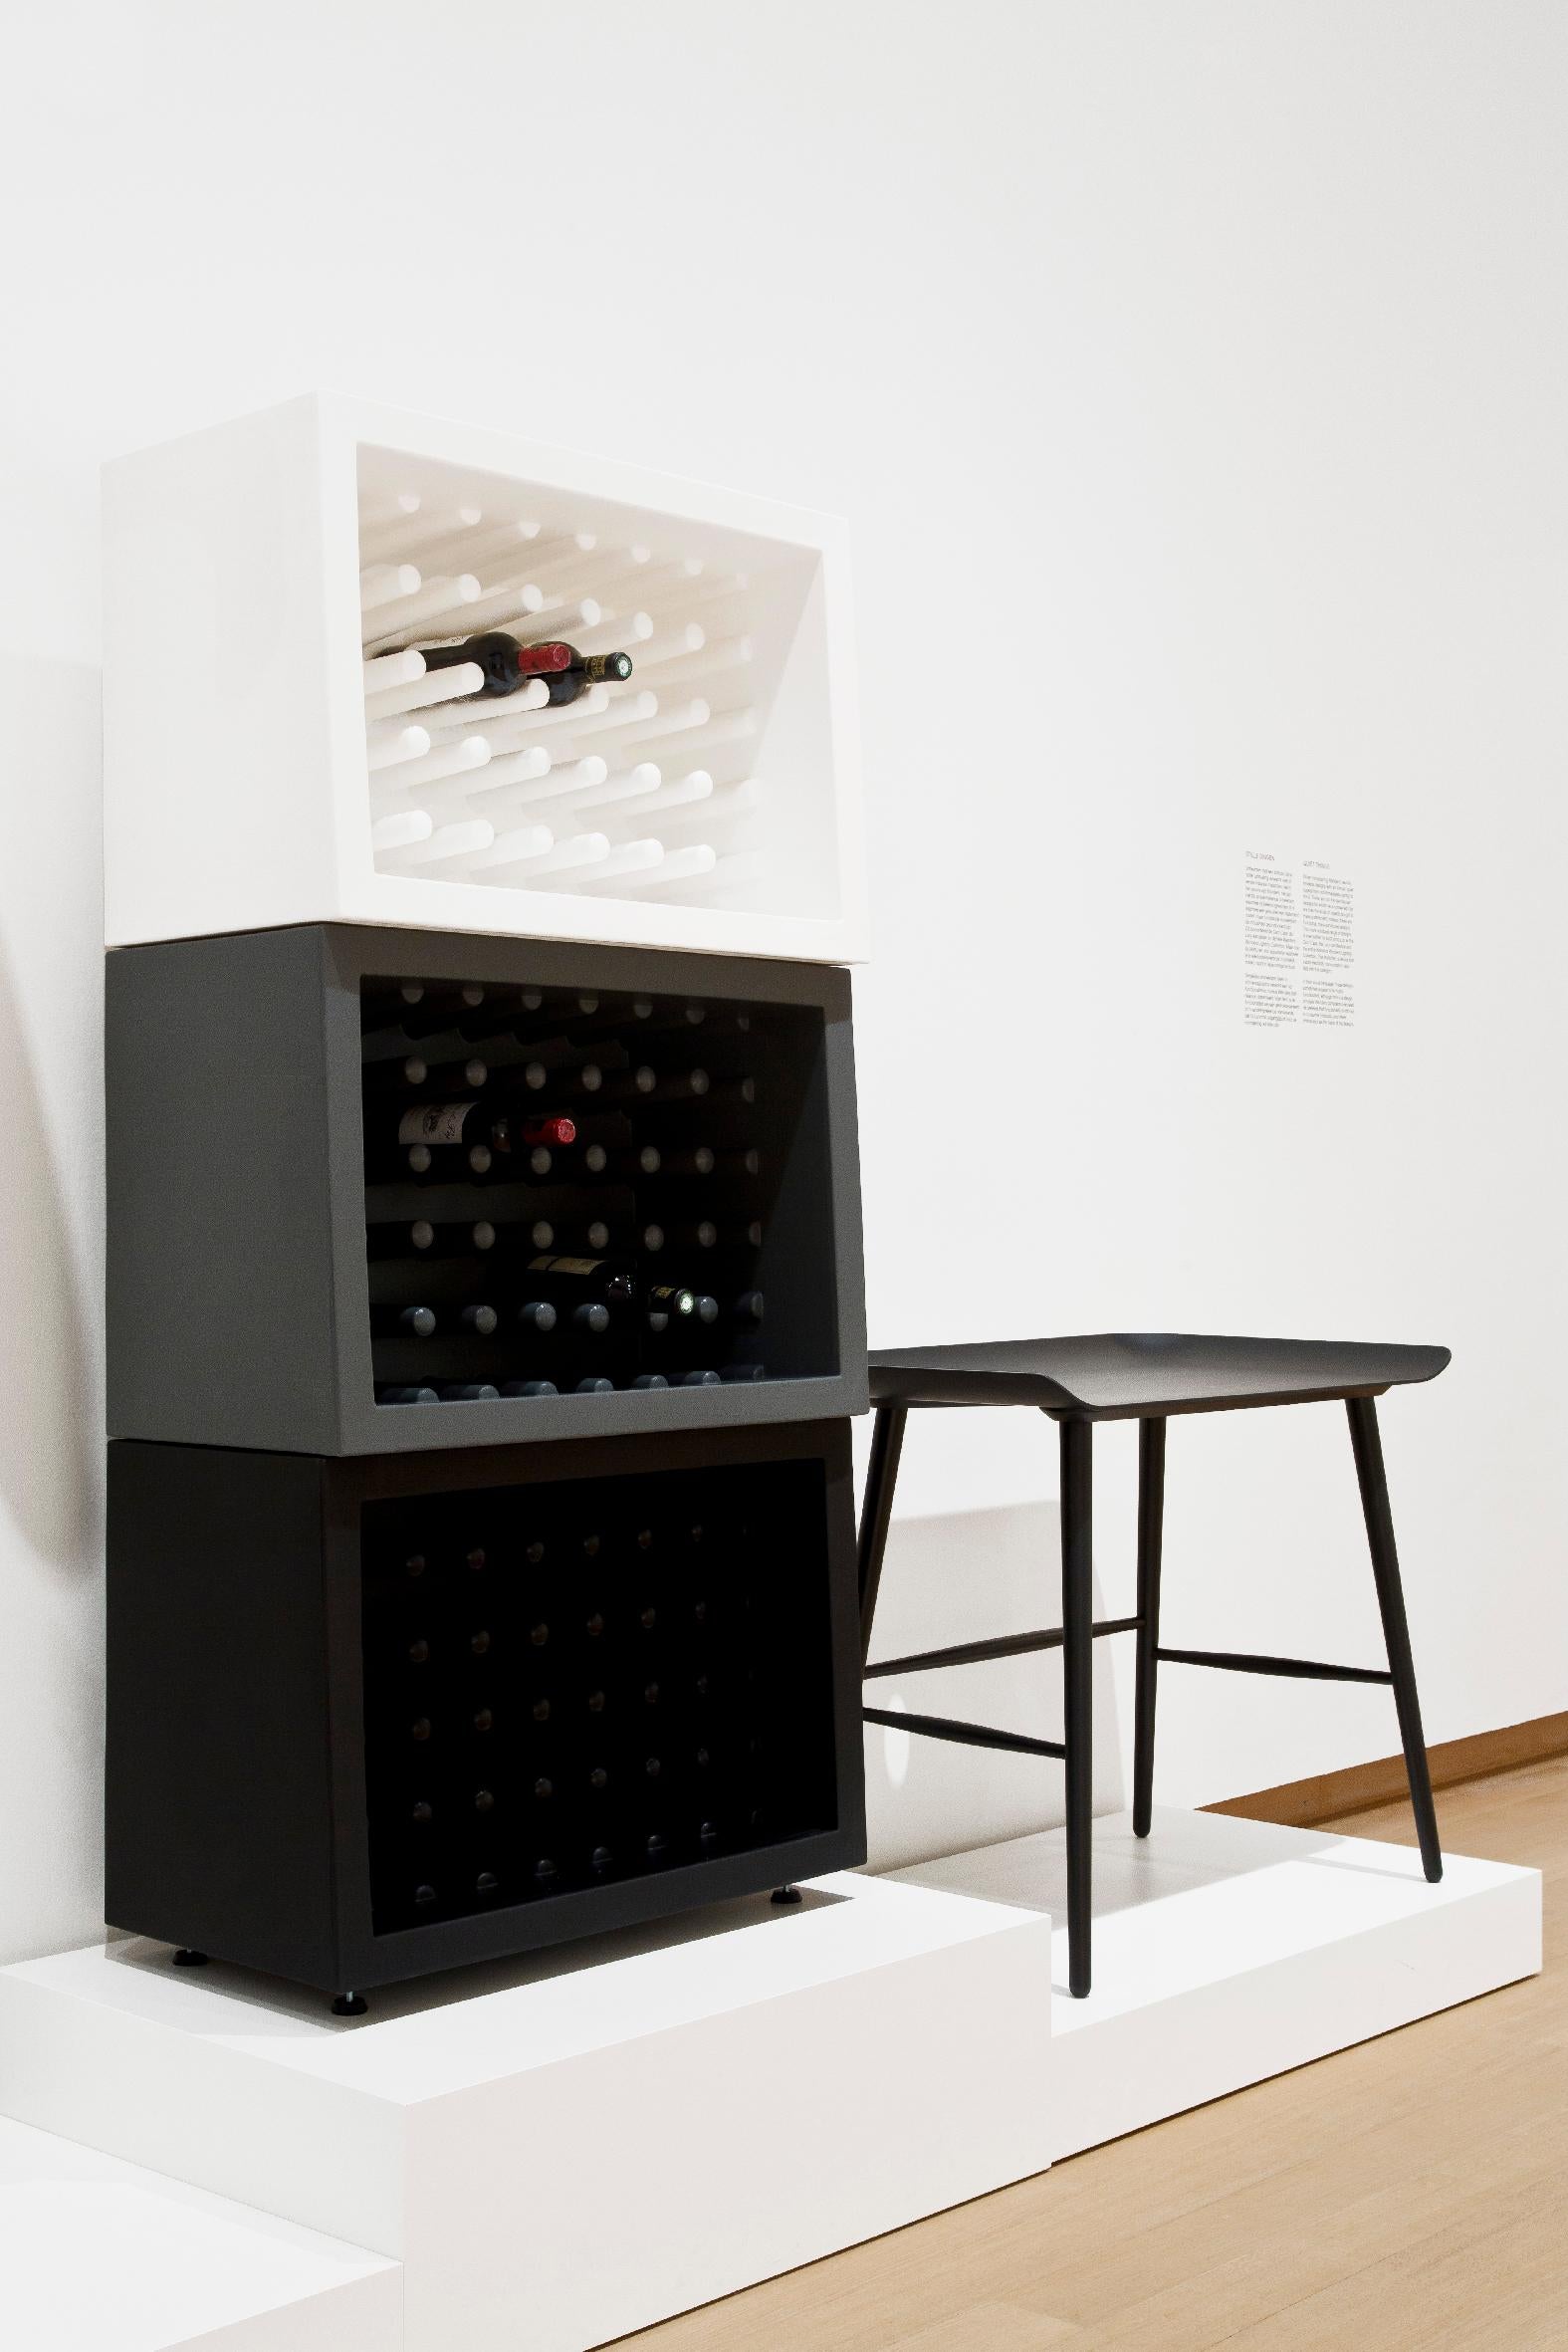 Bachus ist ein ungewöhnliches Flaschenregal, das von dem berühmten Designer Marcel Wanders entworfen wurde. Seine Modularität und sein essentielles Design passen nicht nur zu zeitgenössischen Einrichtungen, sondern auch zu klassischen Möbeln. Bachus